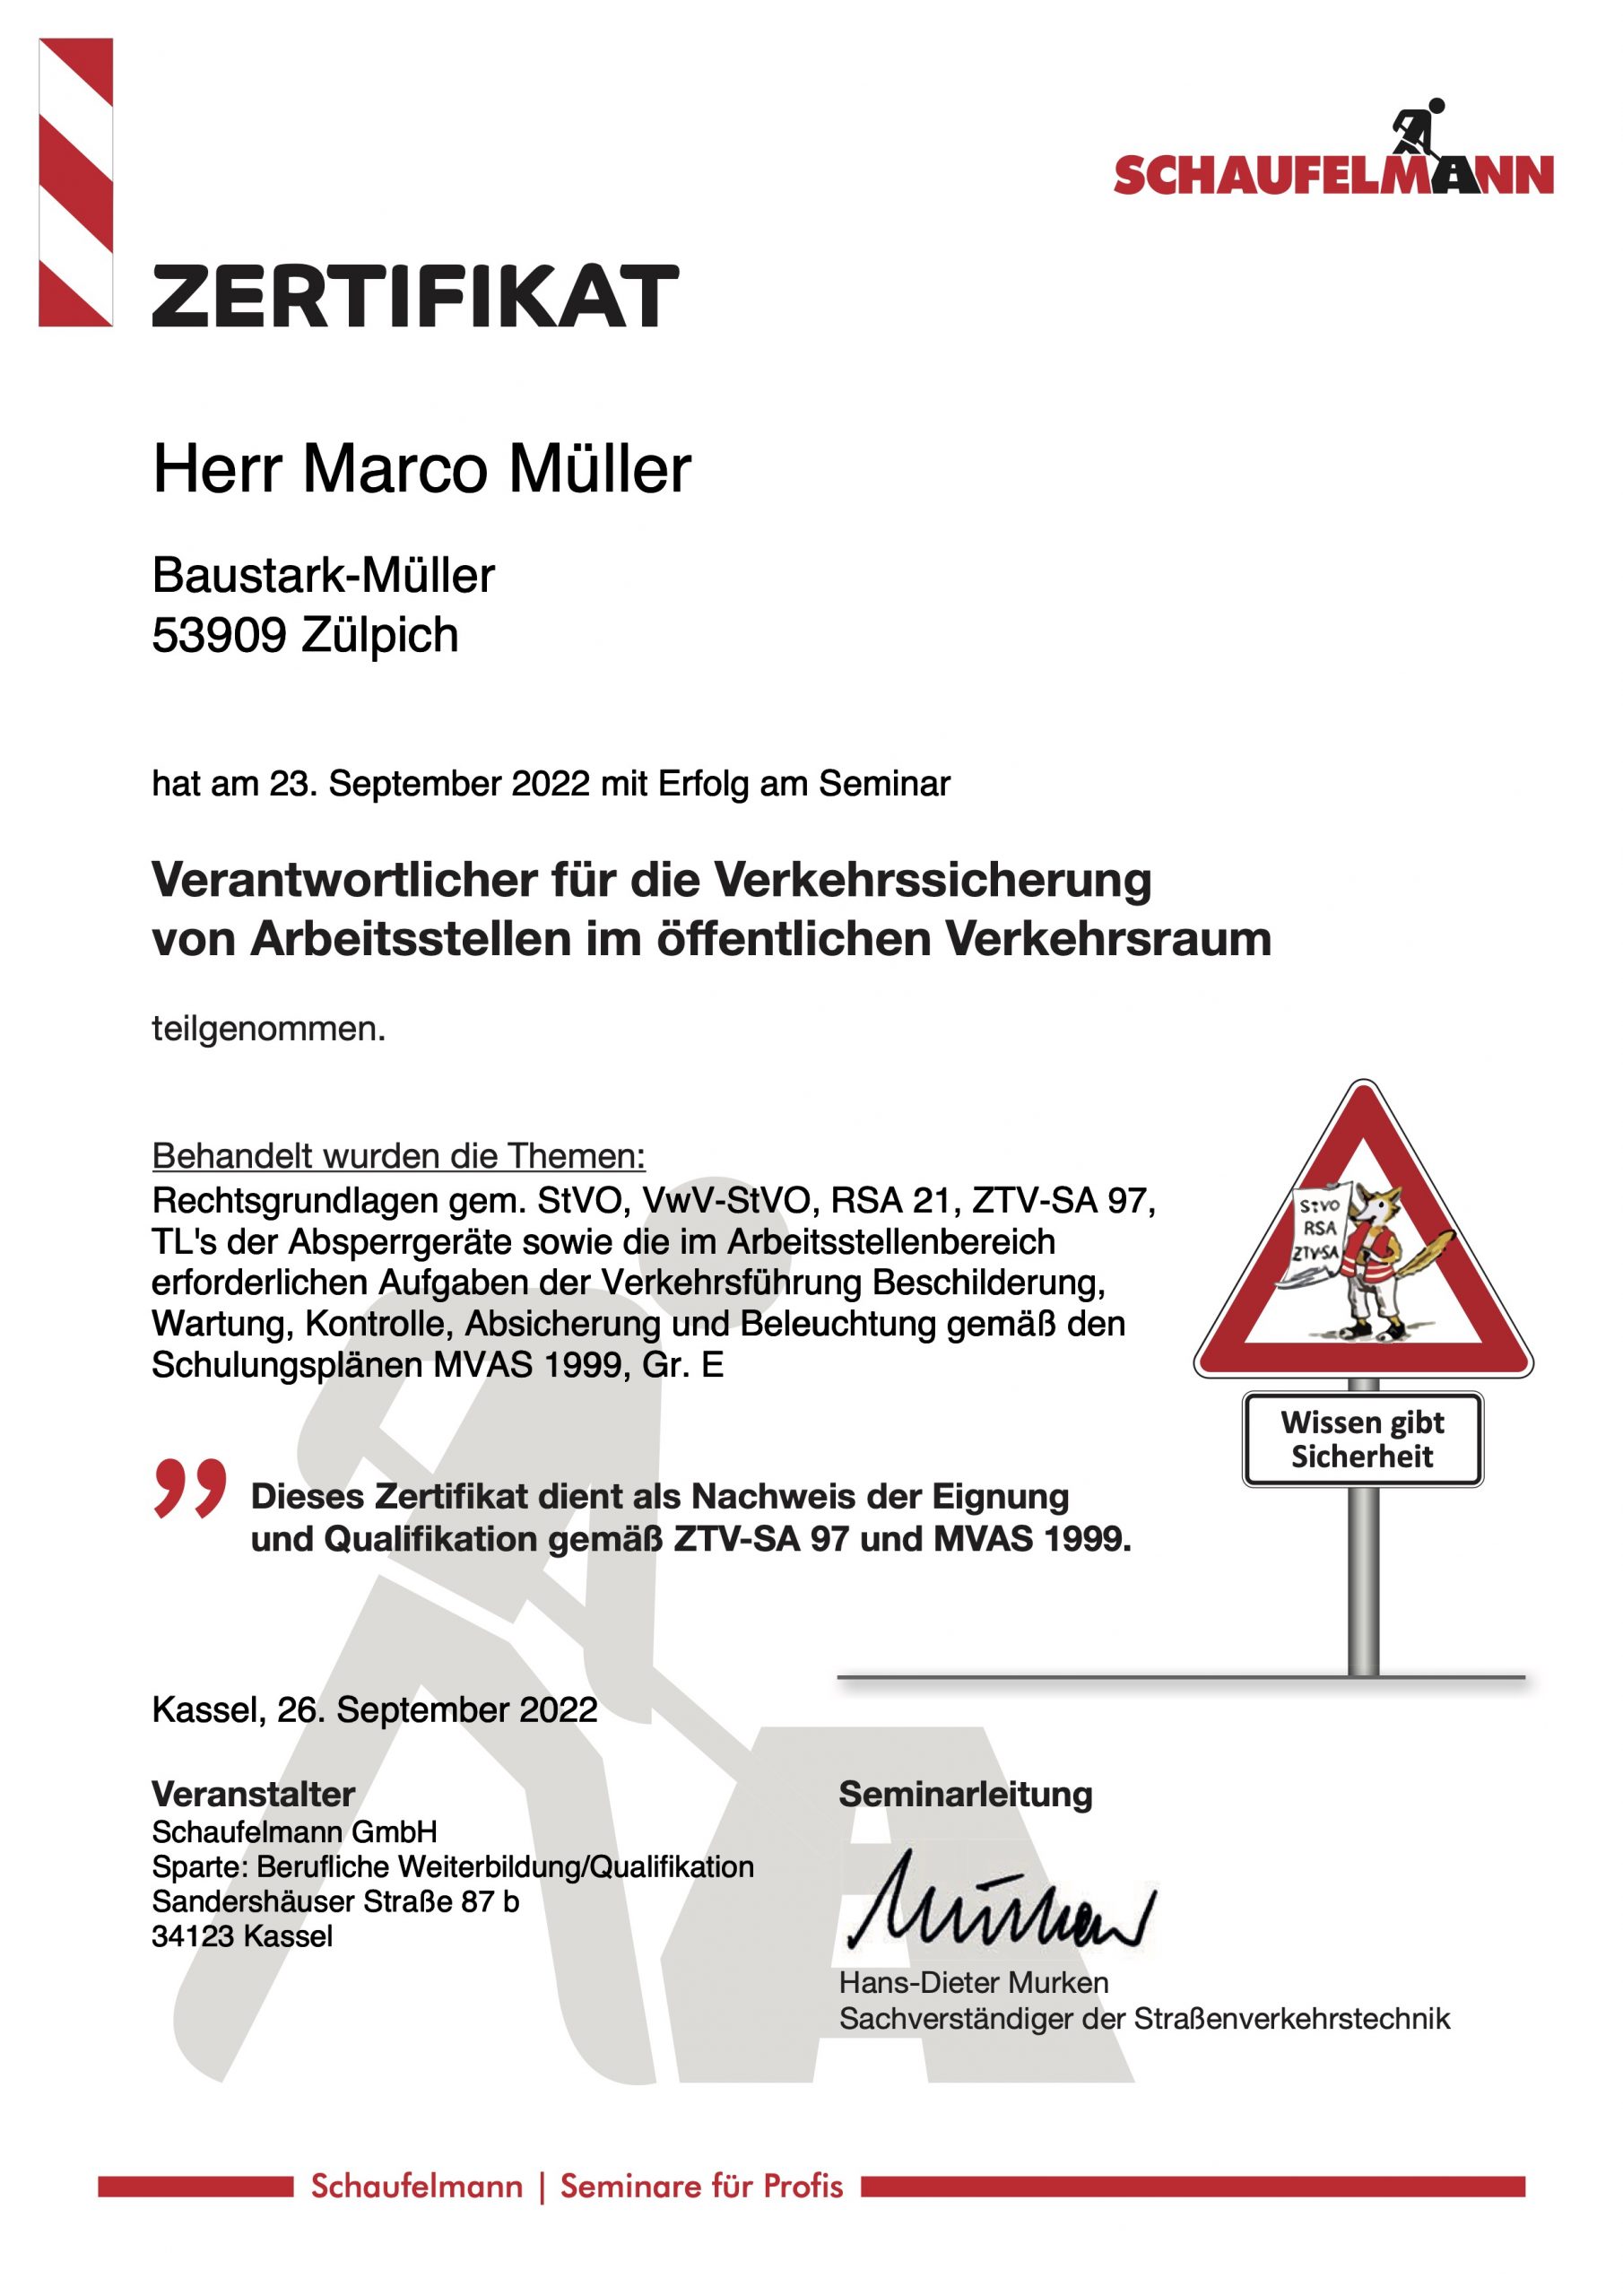 Zertifikat Verkehrssicherung von Arbeitsstellen 2022